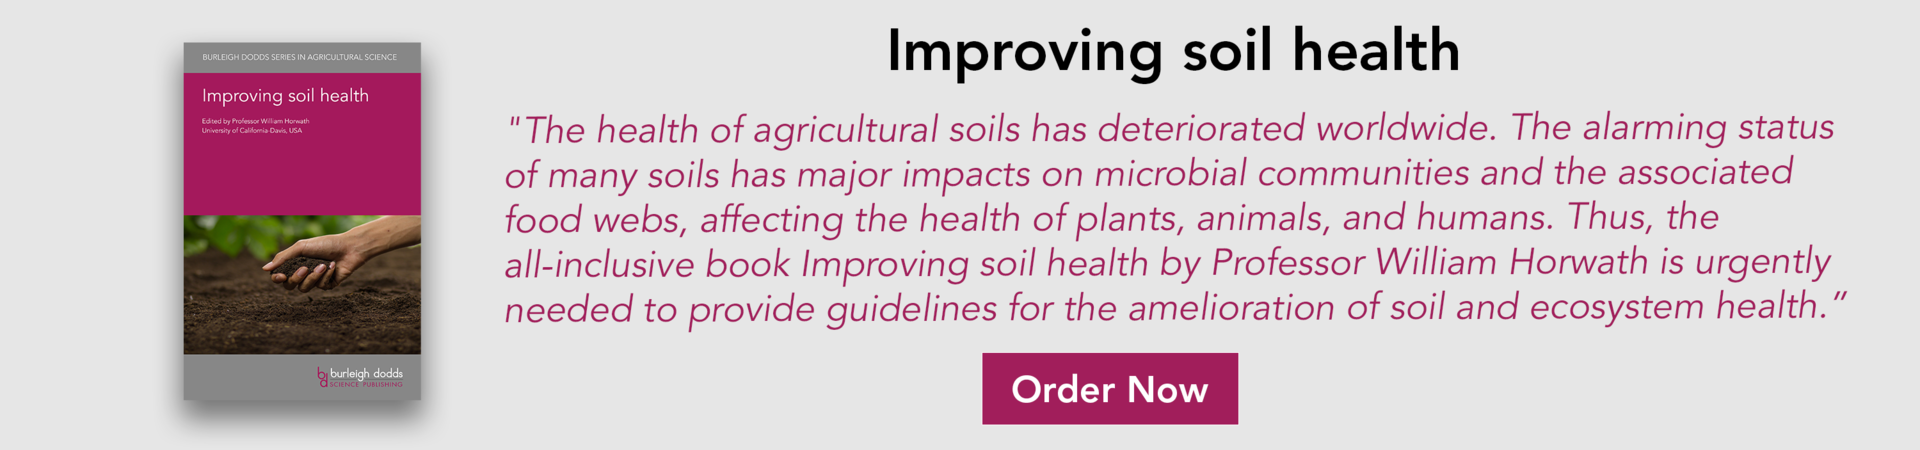 Improving soil health